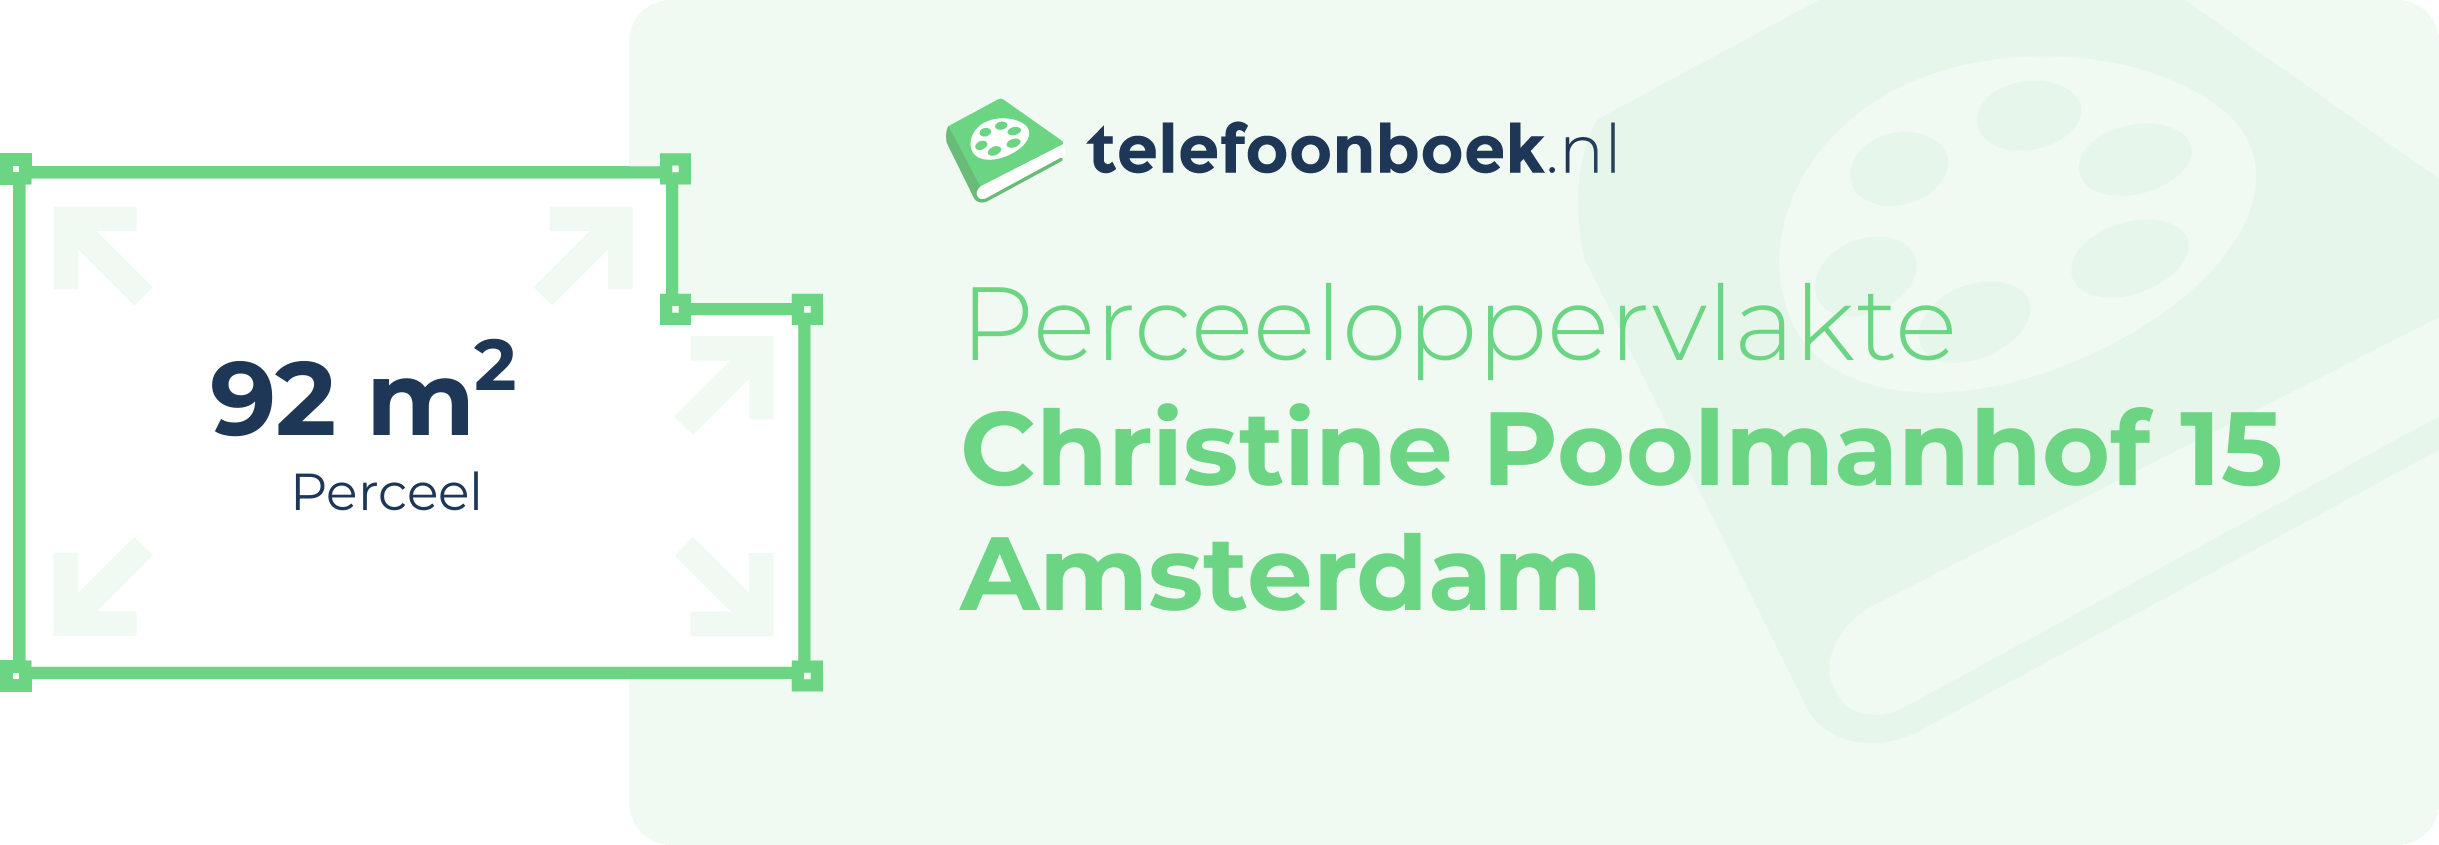 Perceeloppervlakte Christine Poolmanhof 15 Amsterdam